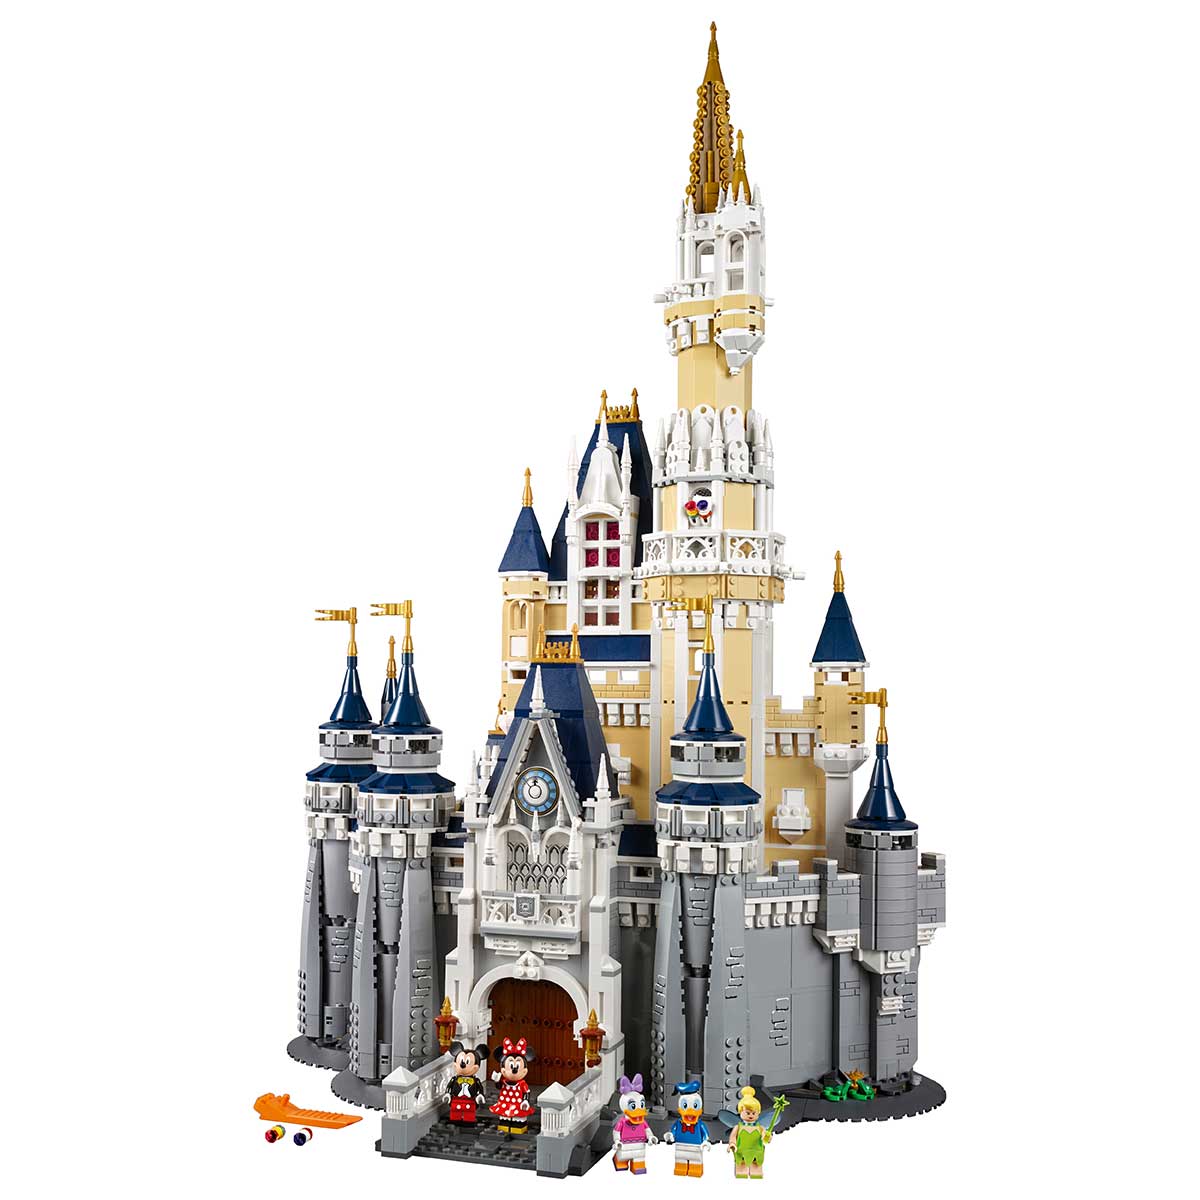 楽天市場 レゴ Lego ディズニー キャッスル 国内流通正規品 おもちゃ 玩具 ブロック 男の子 お城 ディズニーランド シンデレラ城 プレゼント ギフト 誕生日 クリスマス 母の日 Limep 楽天市場店